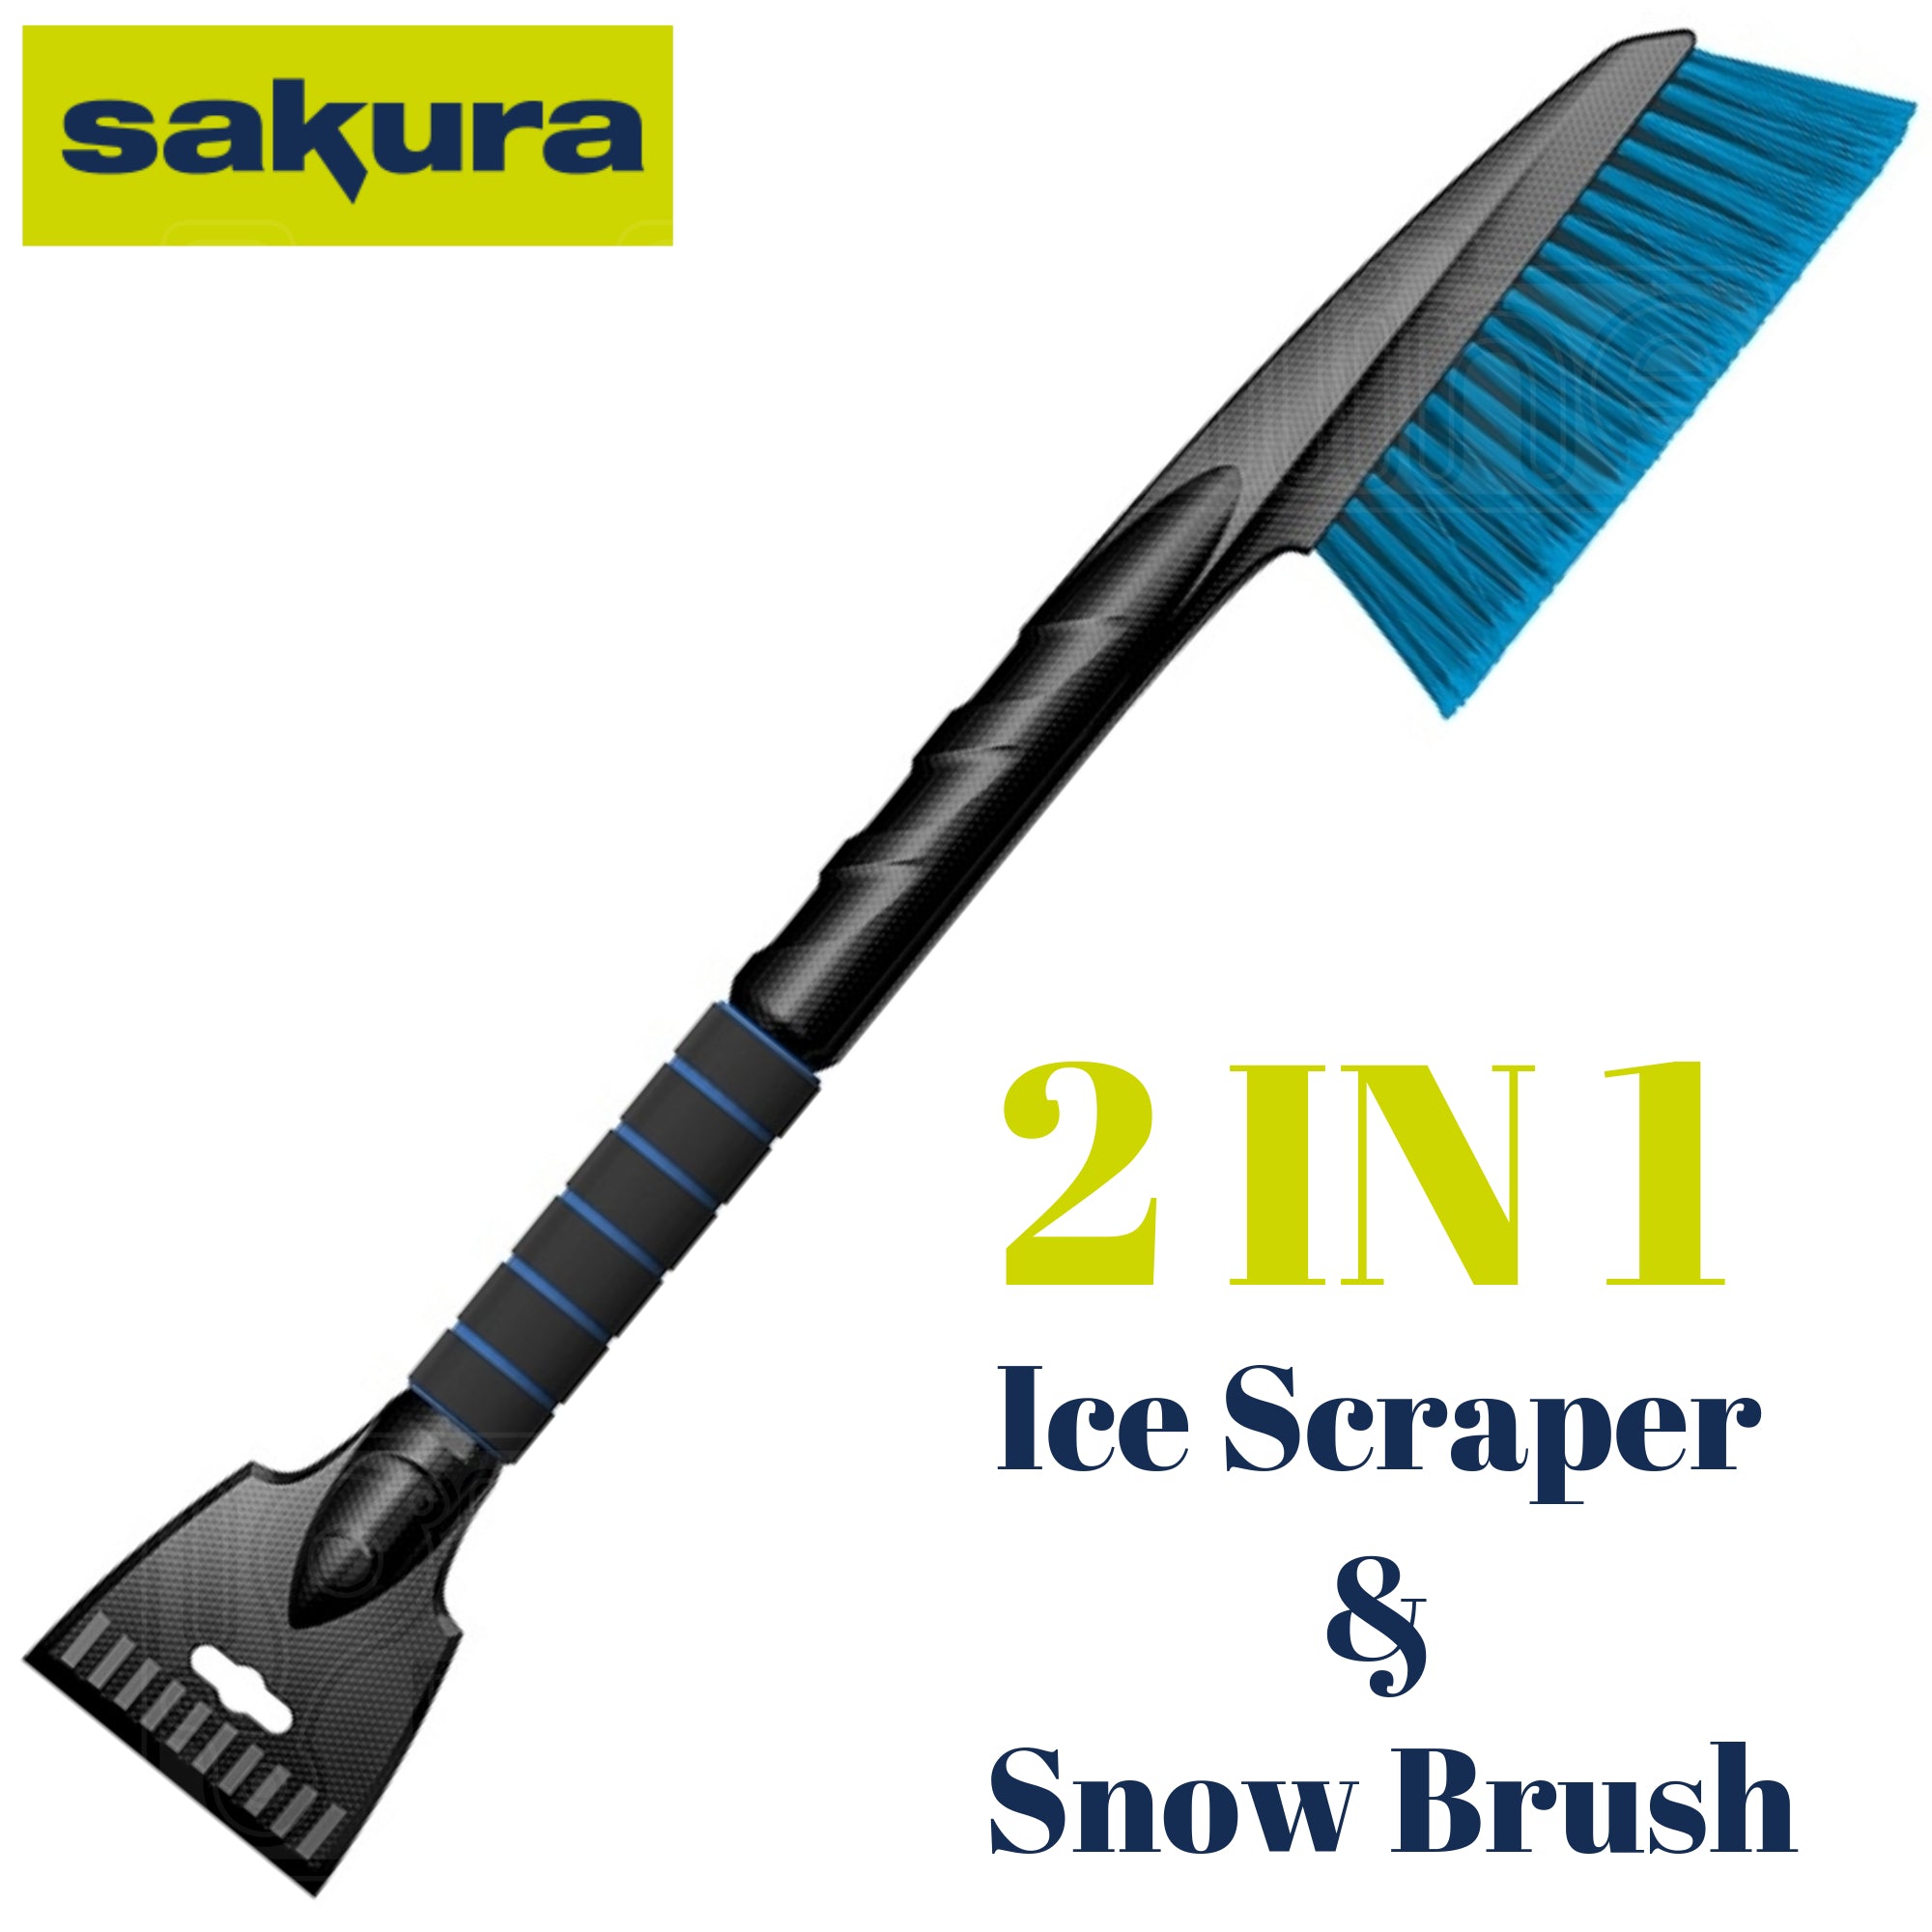 Ice Scraper & Snow Brush